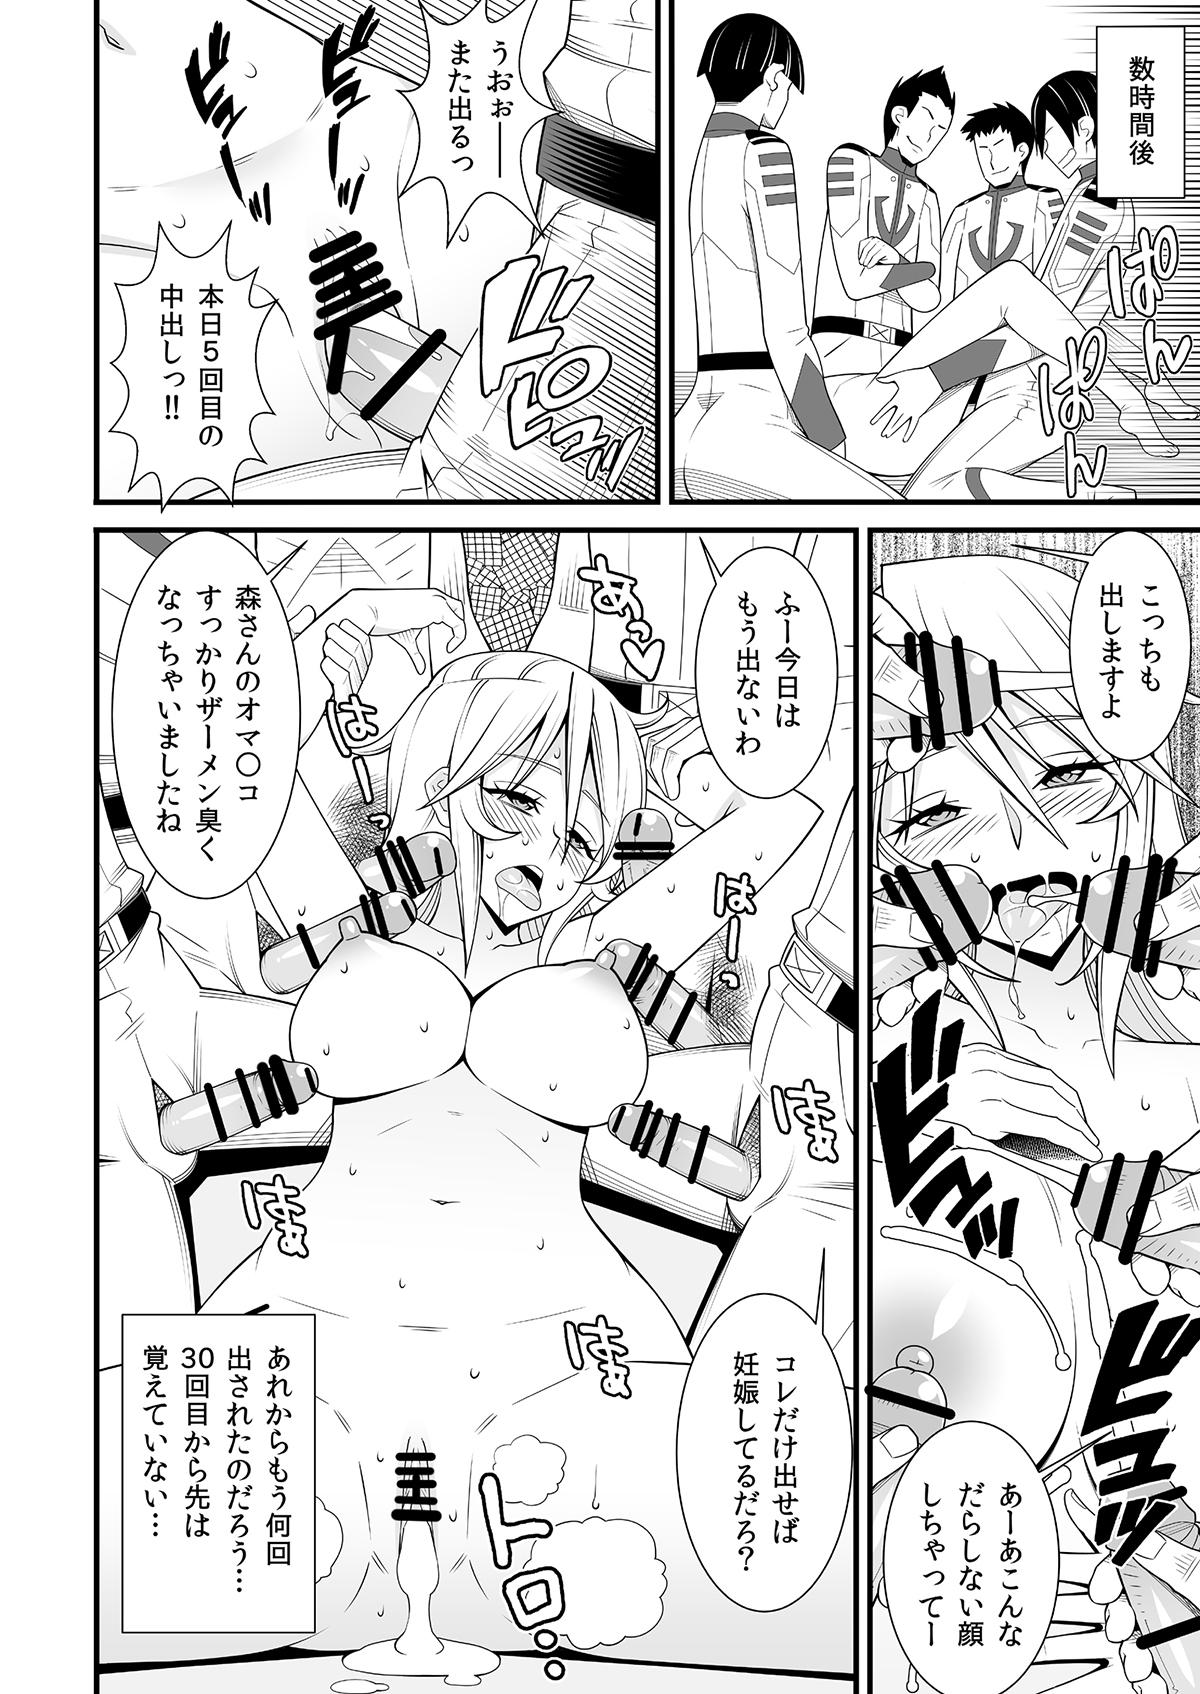 Doll Yamato Nadesiko - Space battleship yamato 3way - Page 12